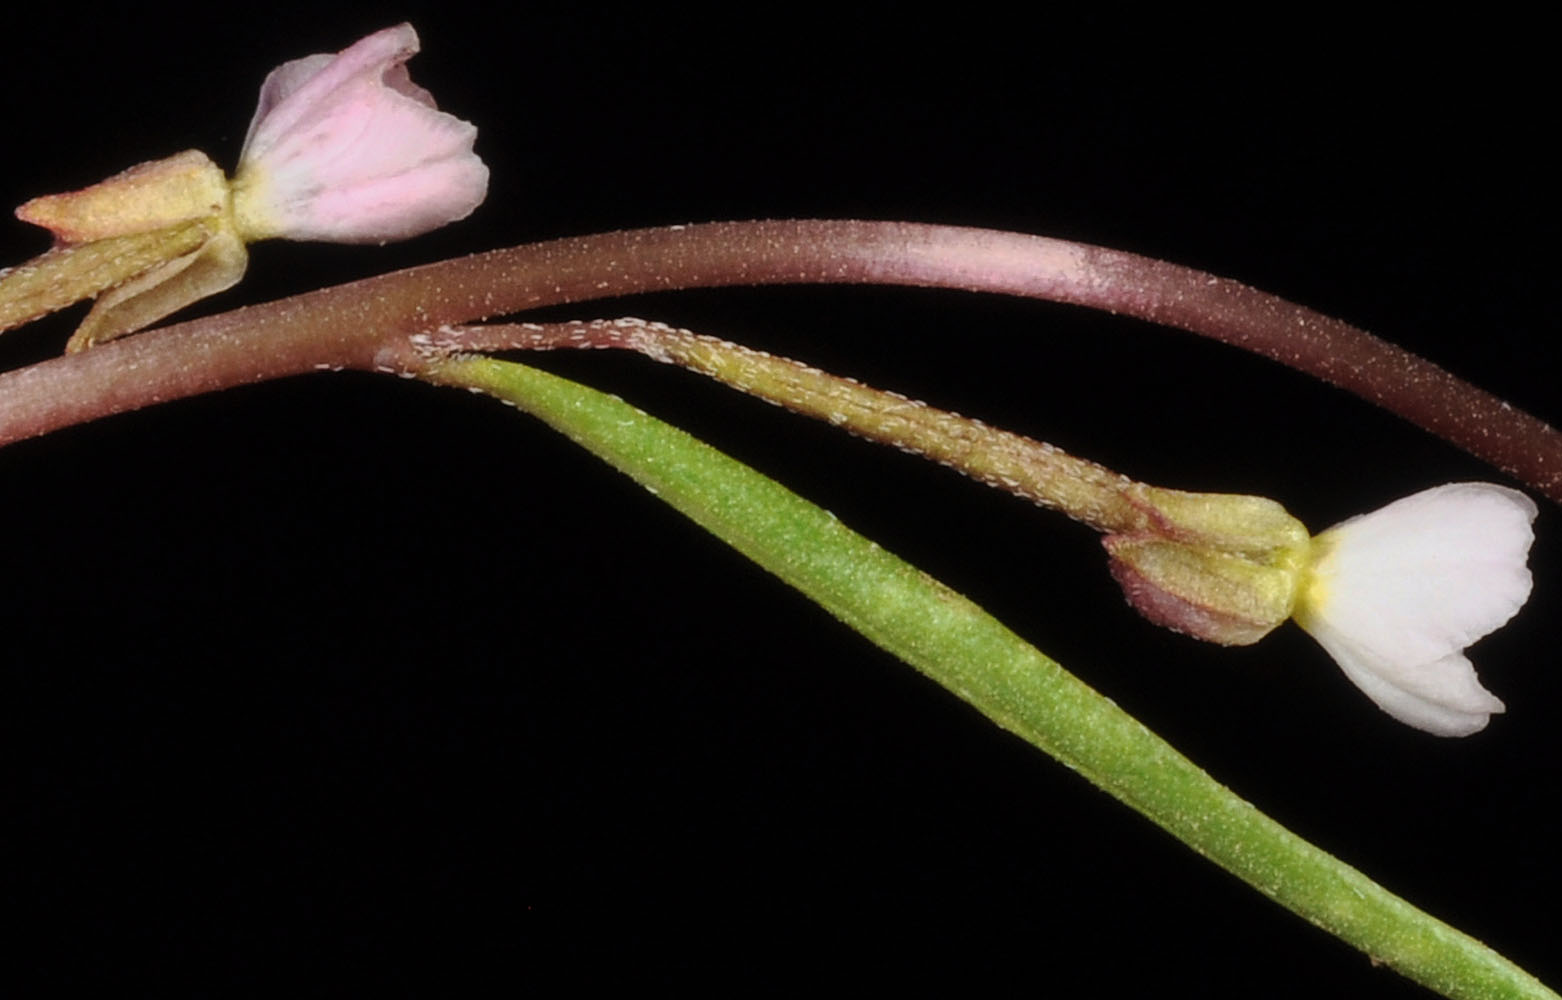 Flora of Eastern Washington Image: Gayophytum diffusum